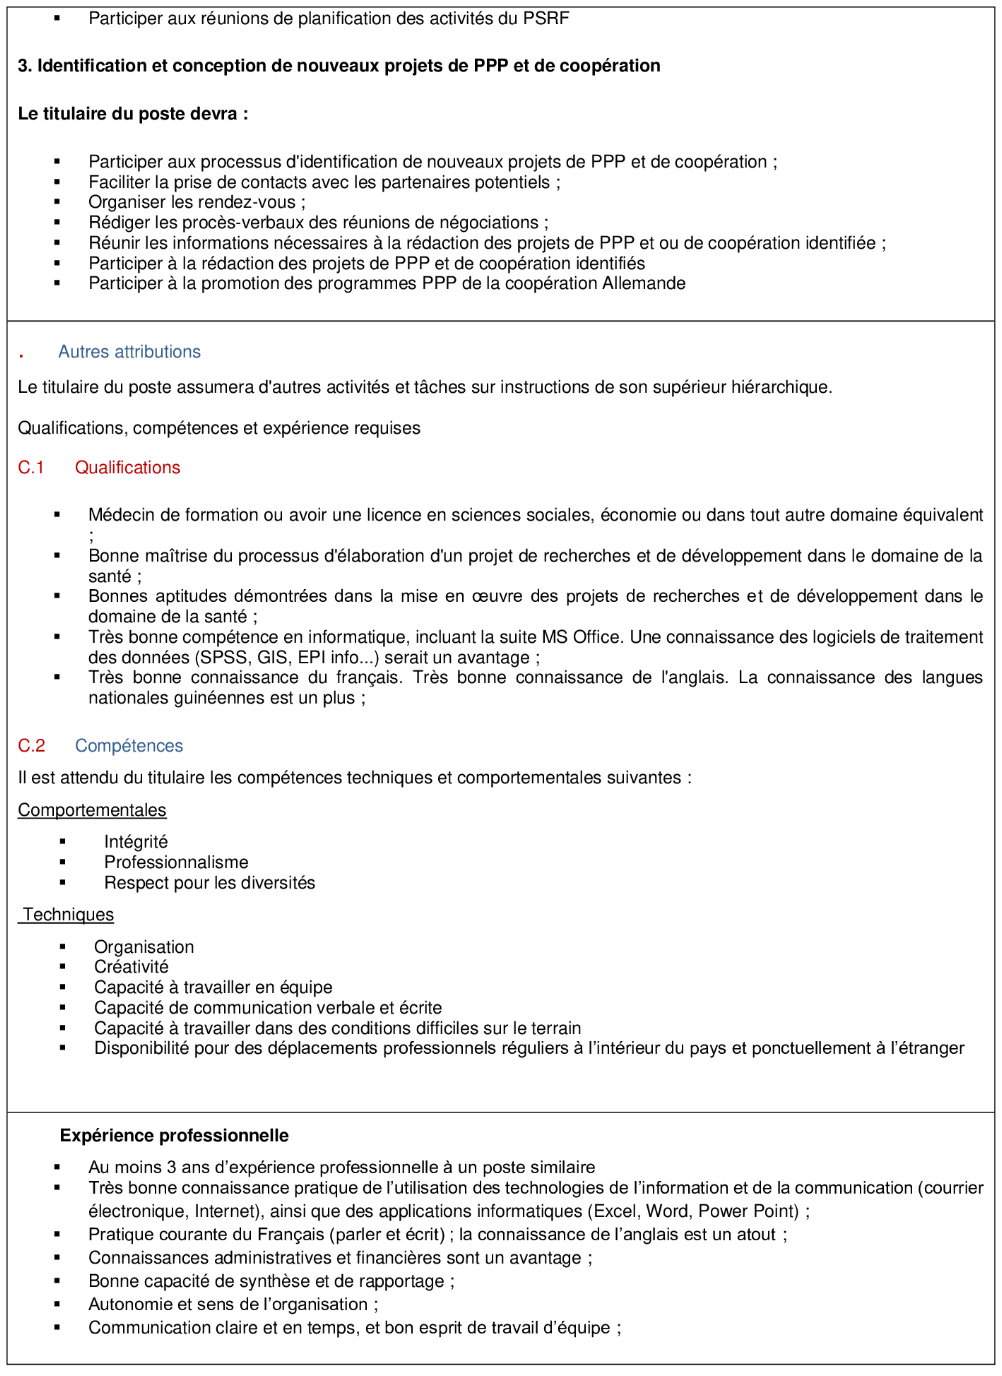 Recrutement d'Un Conseiller technique par giz en guinée - offre d'emploi Giz - page 2